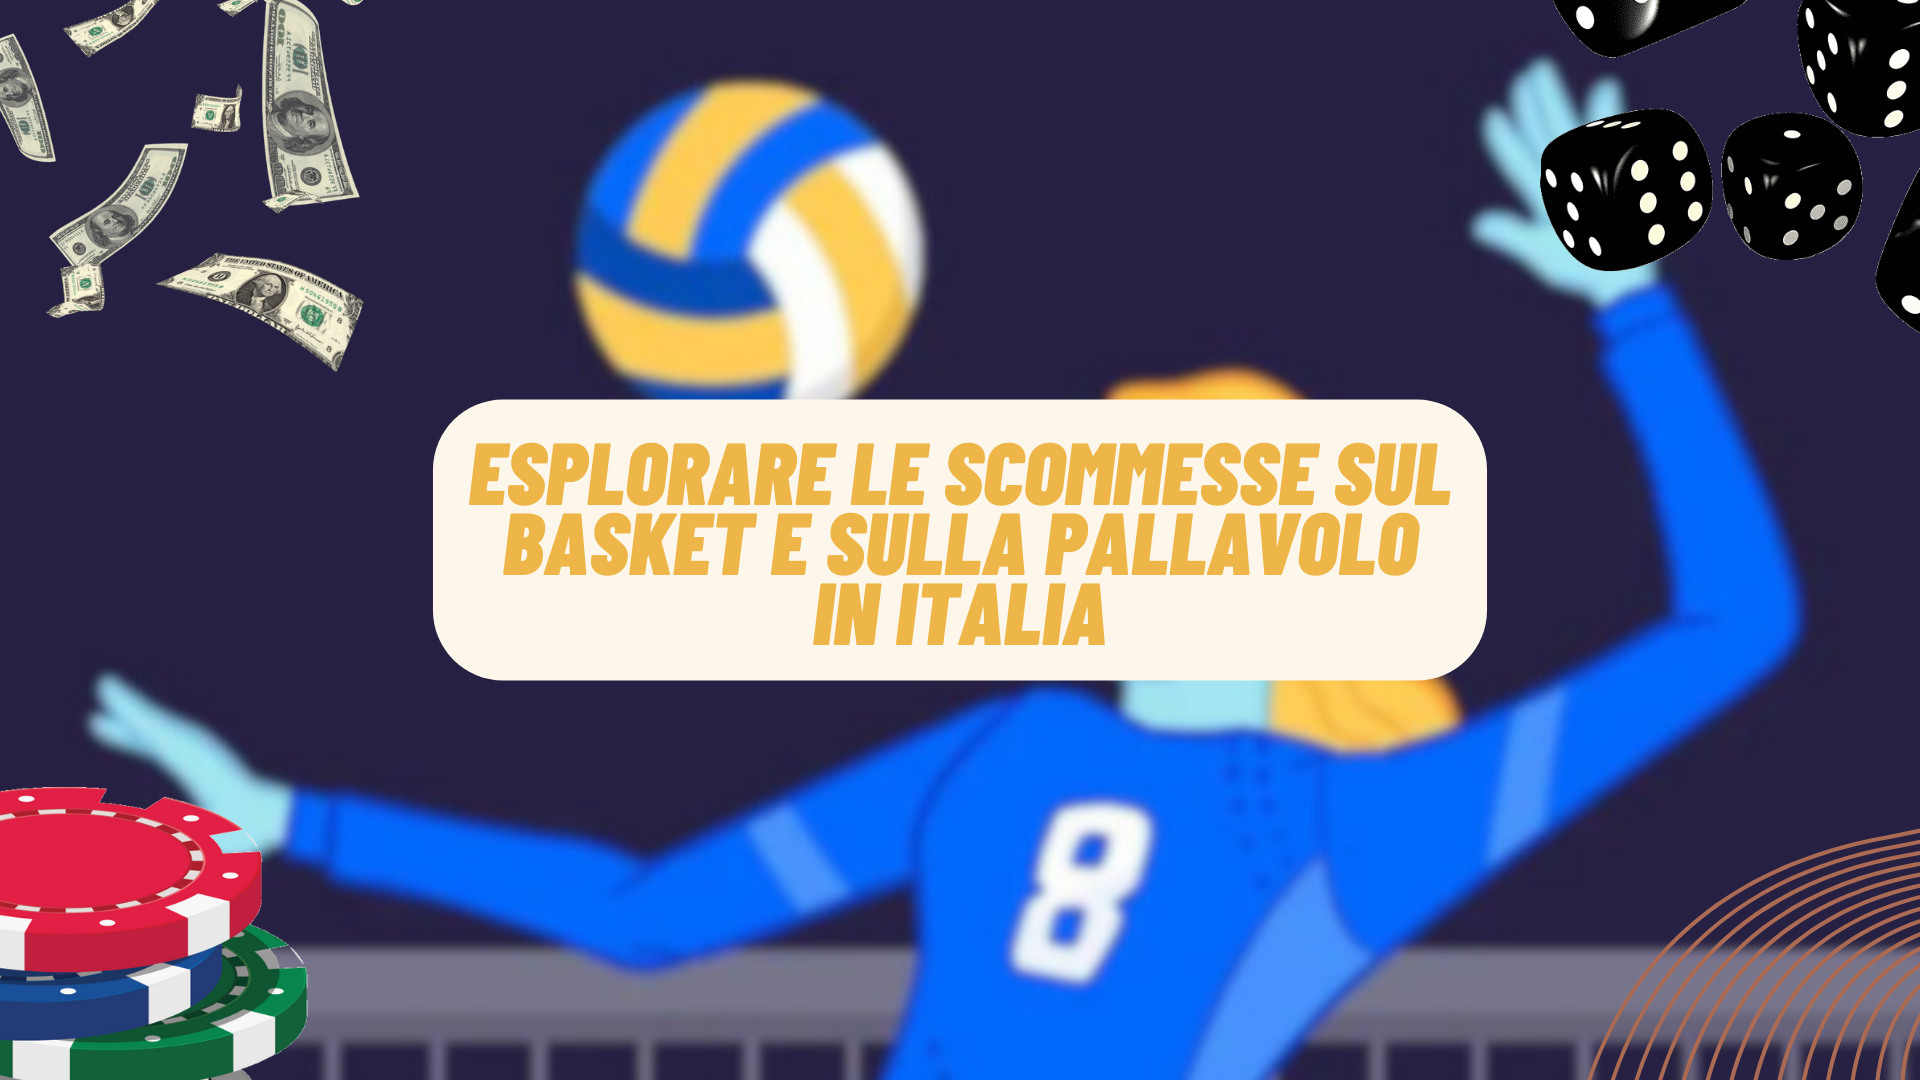 Esplorare le scommesse sul basket e sulla pallavolo in Italia